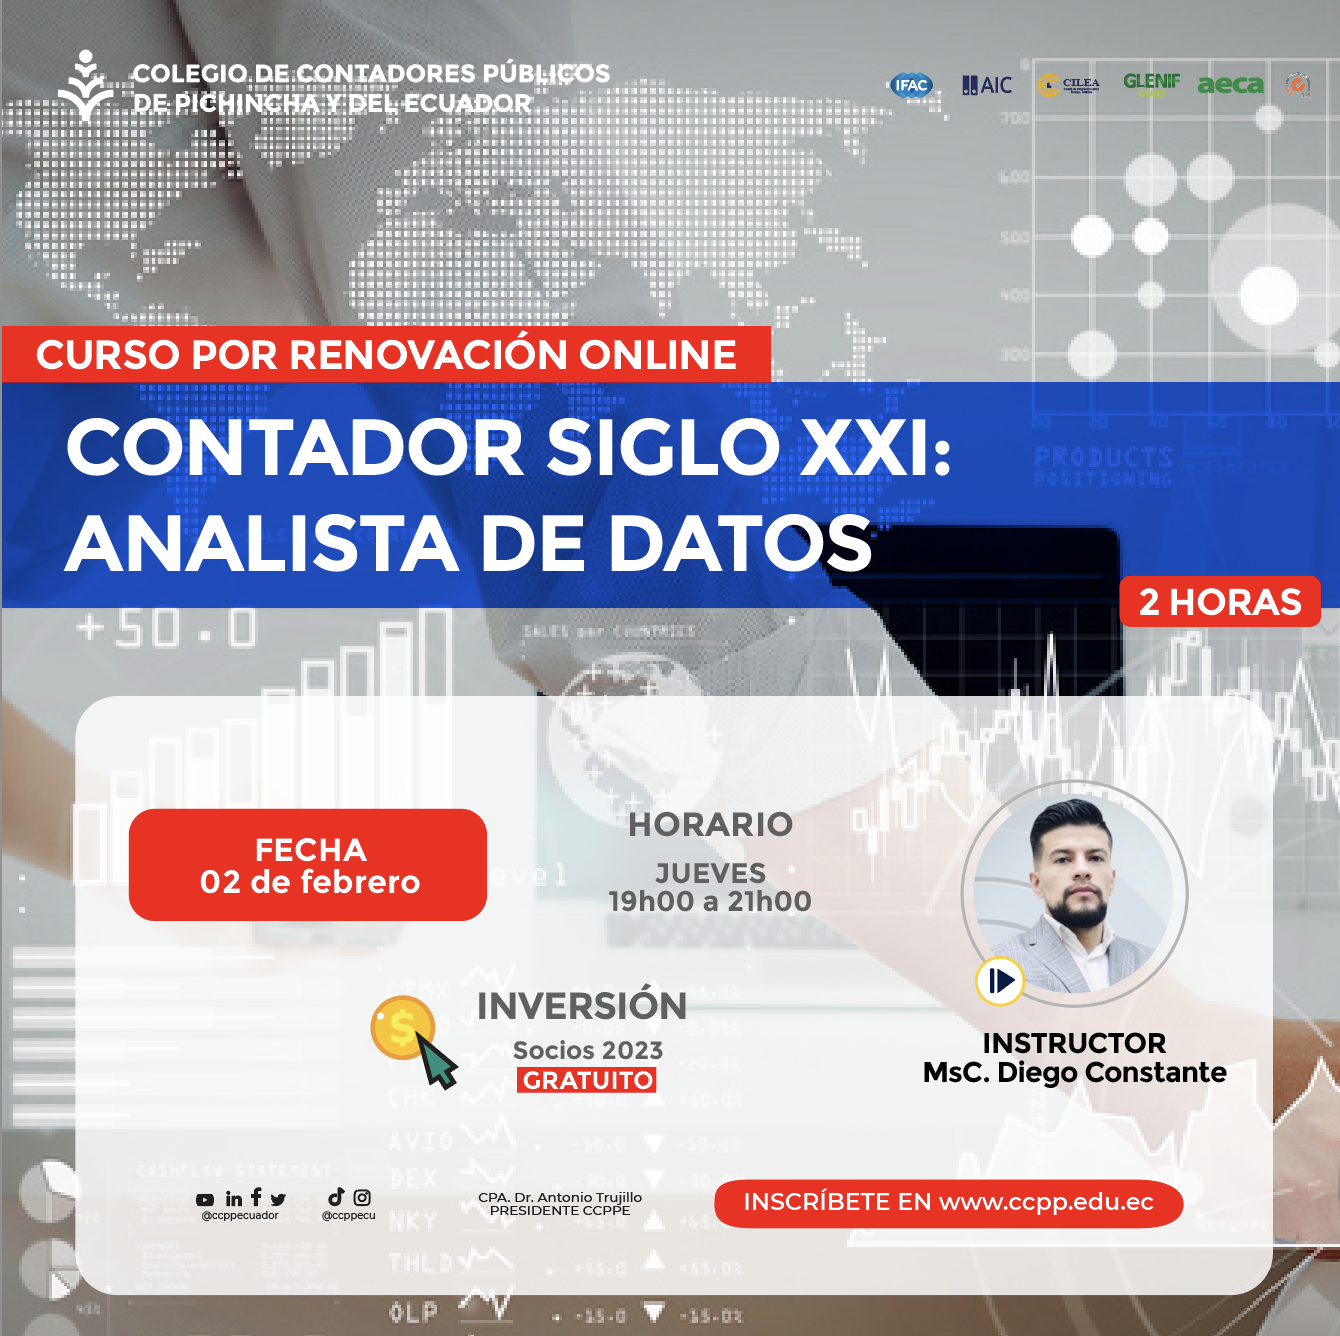 CONTADOR SIGLO XXI: ANALISTA DE DATOS - 02 FEBRERO 2023